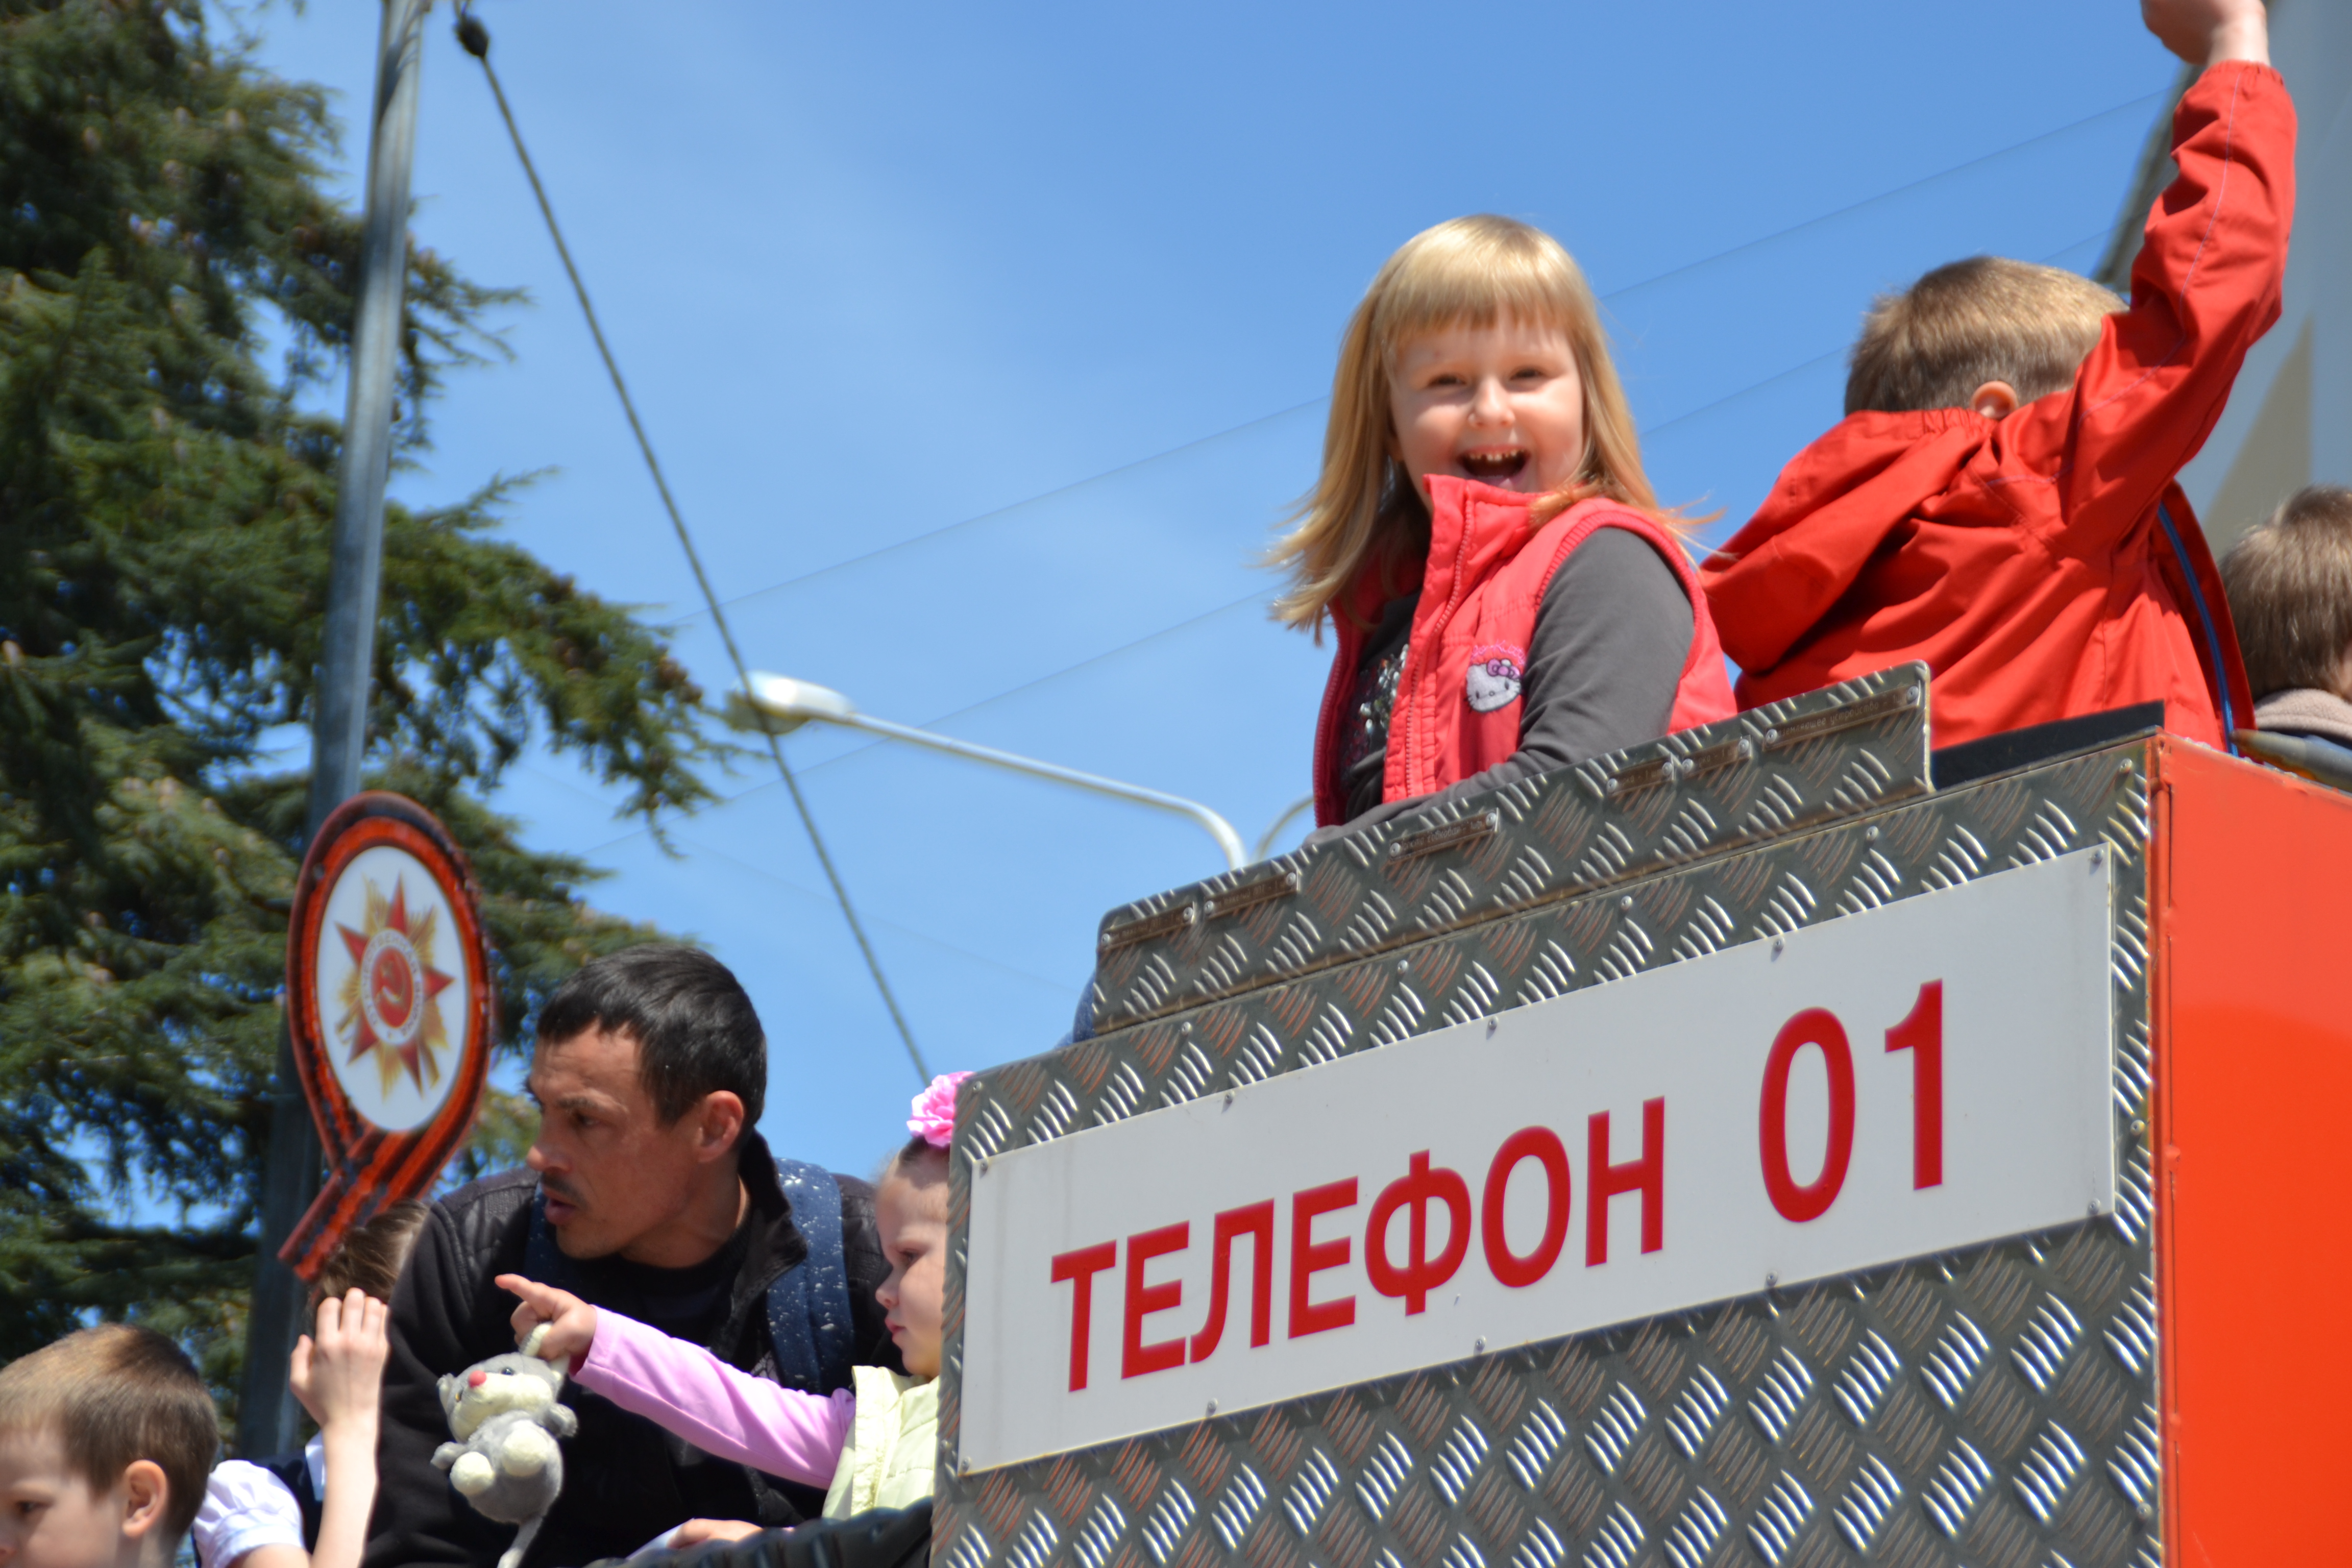 Владимир Зверев поздравил личный состав пожарной охраны с 370-летием образования службы